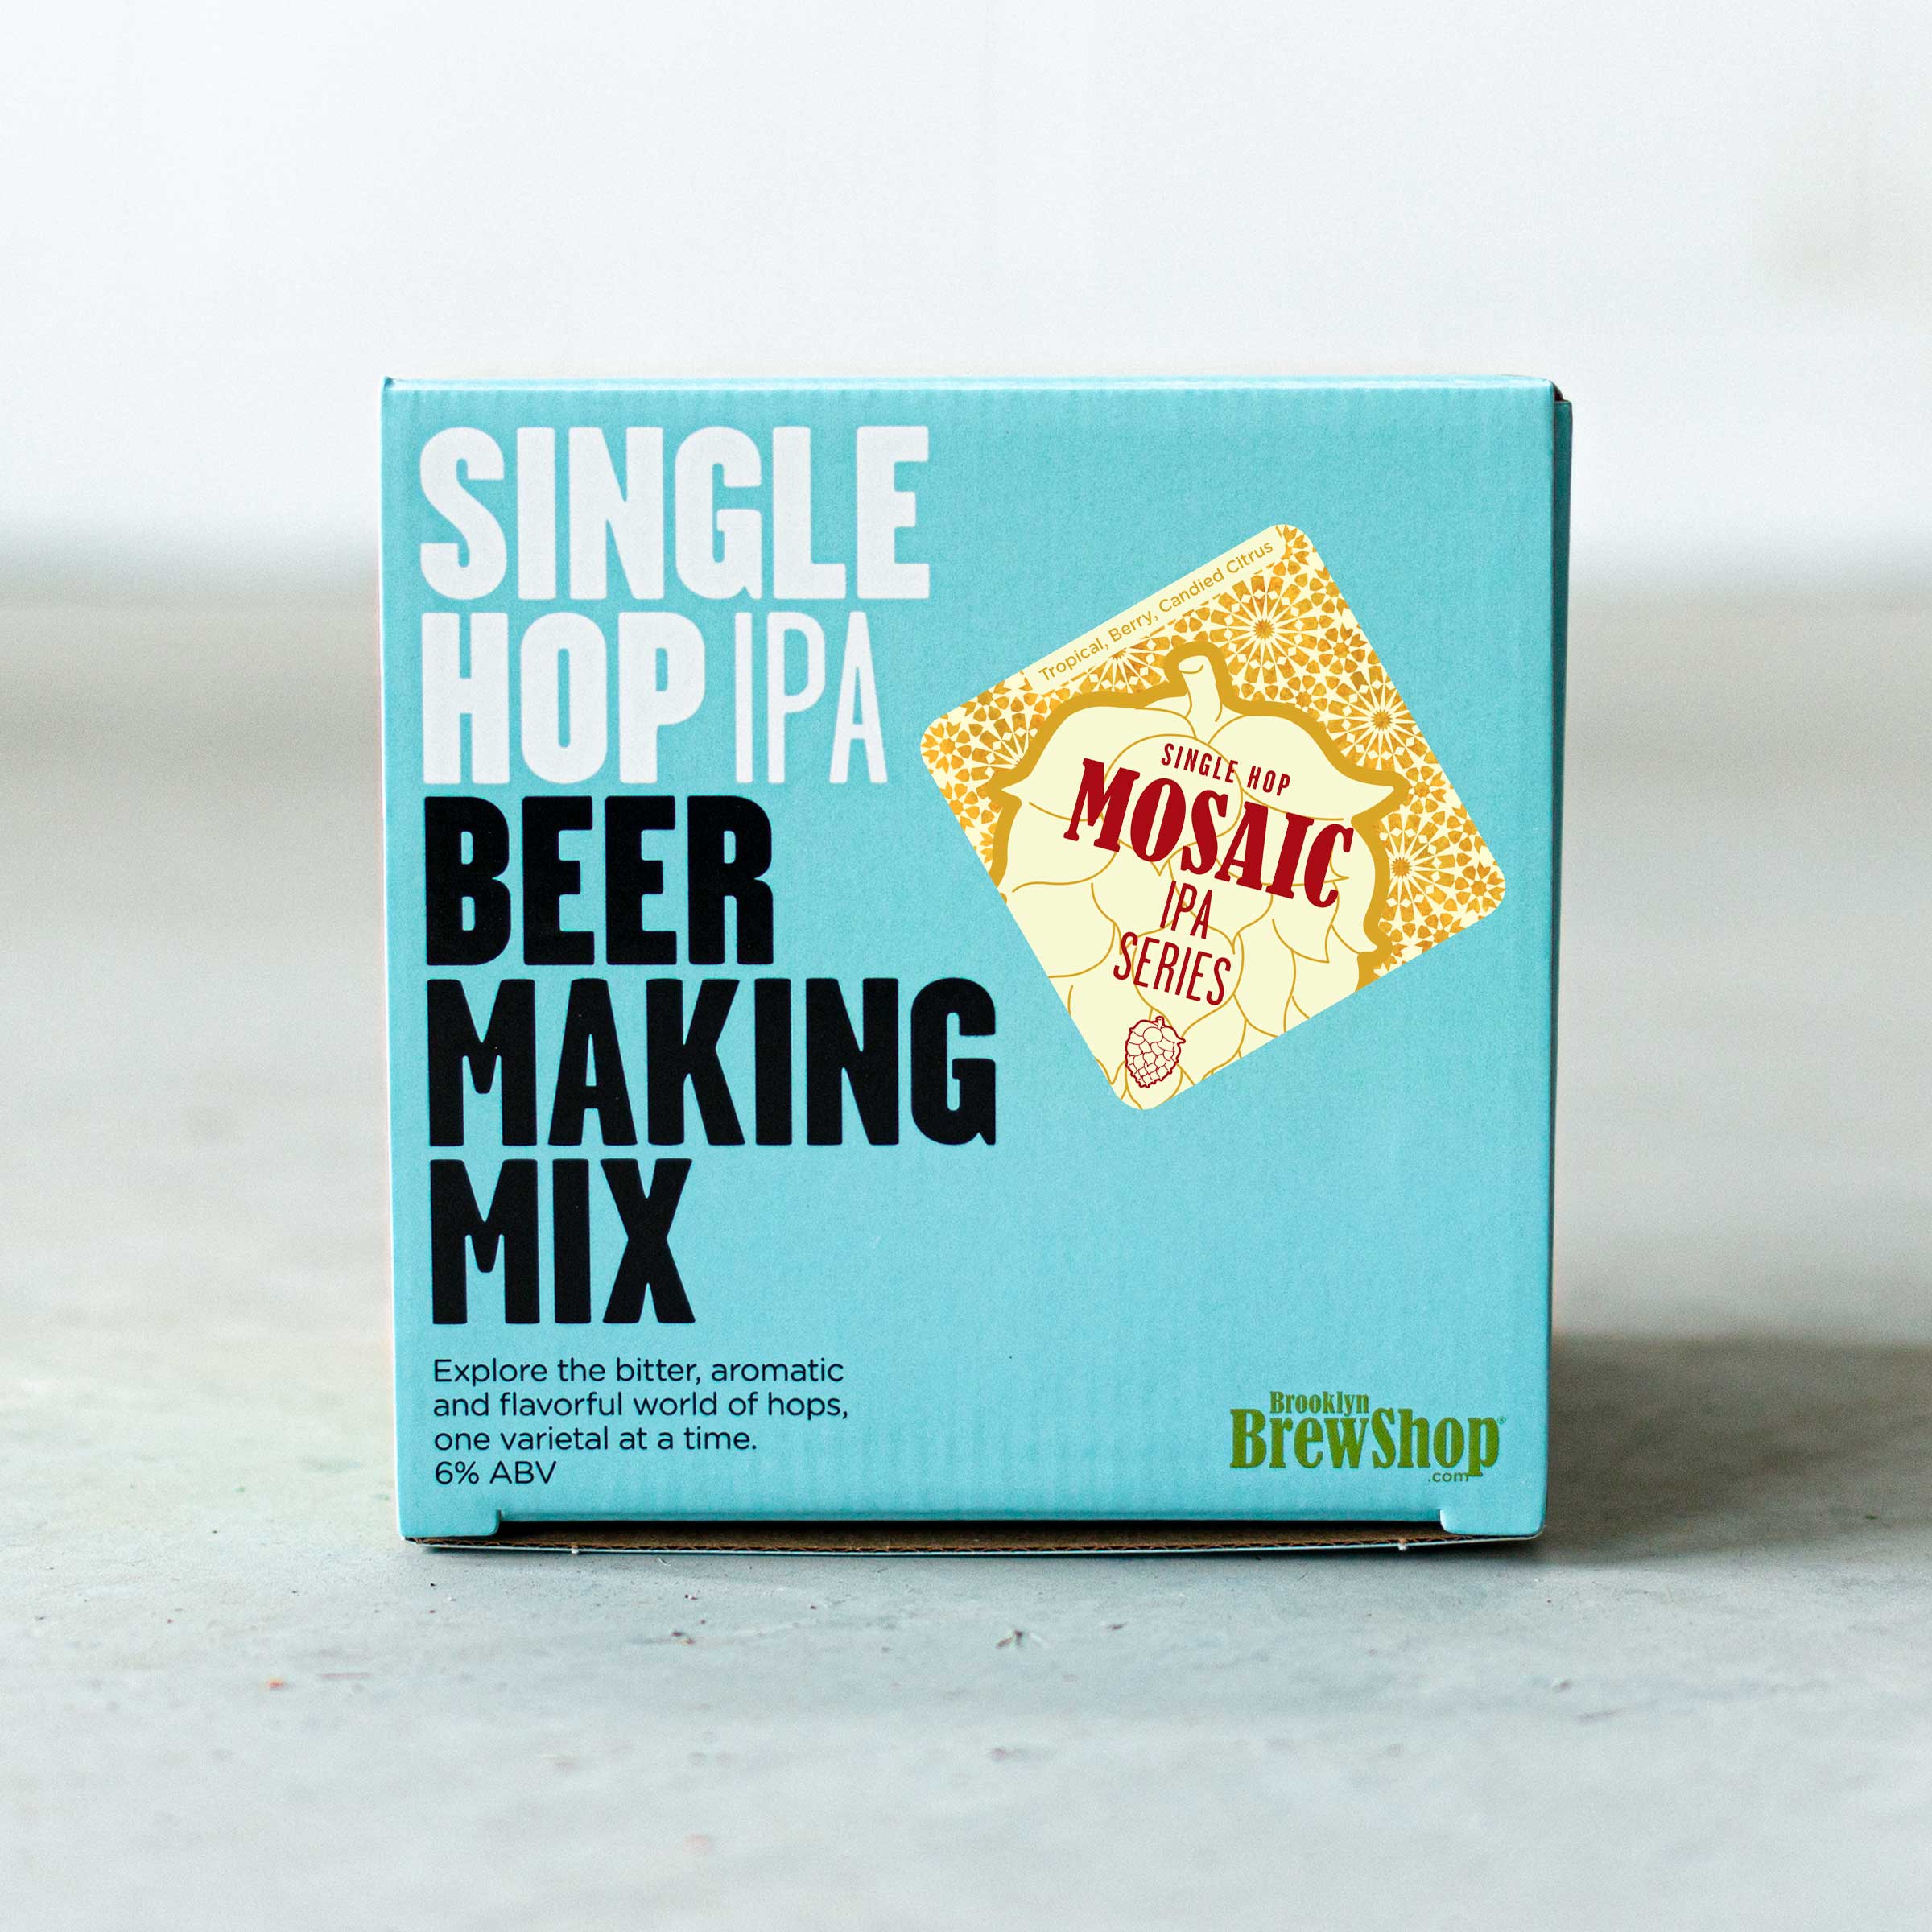 Mosaic Single Hop IPA: Beer Making Mix